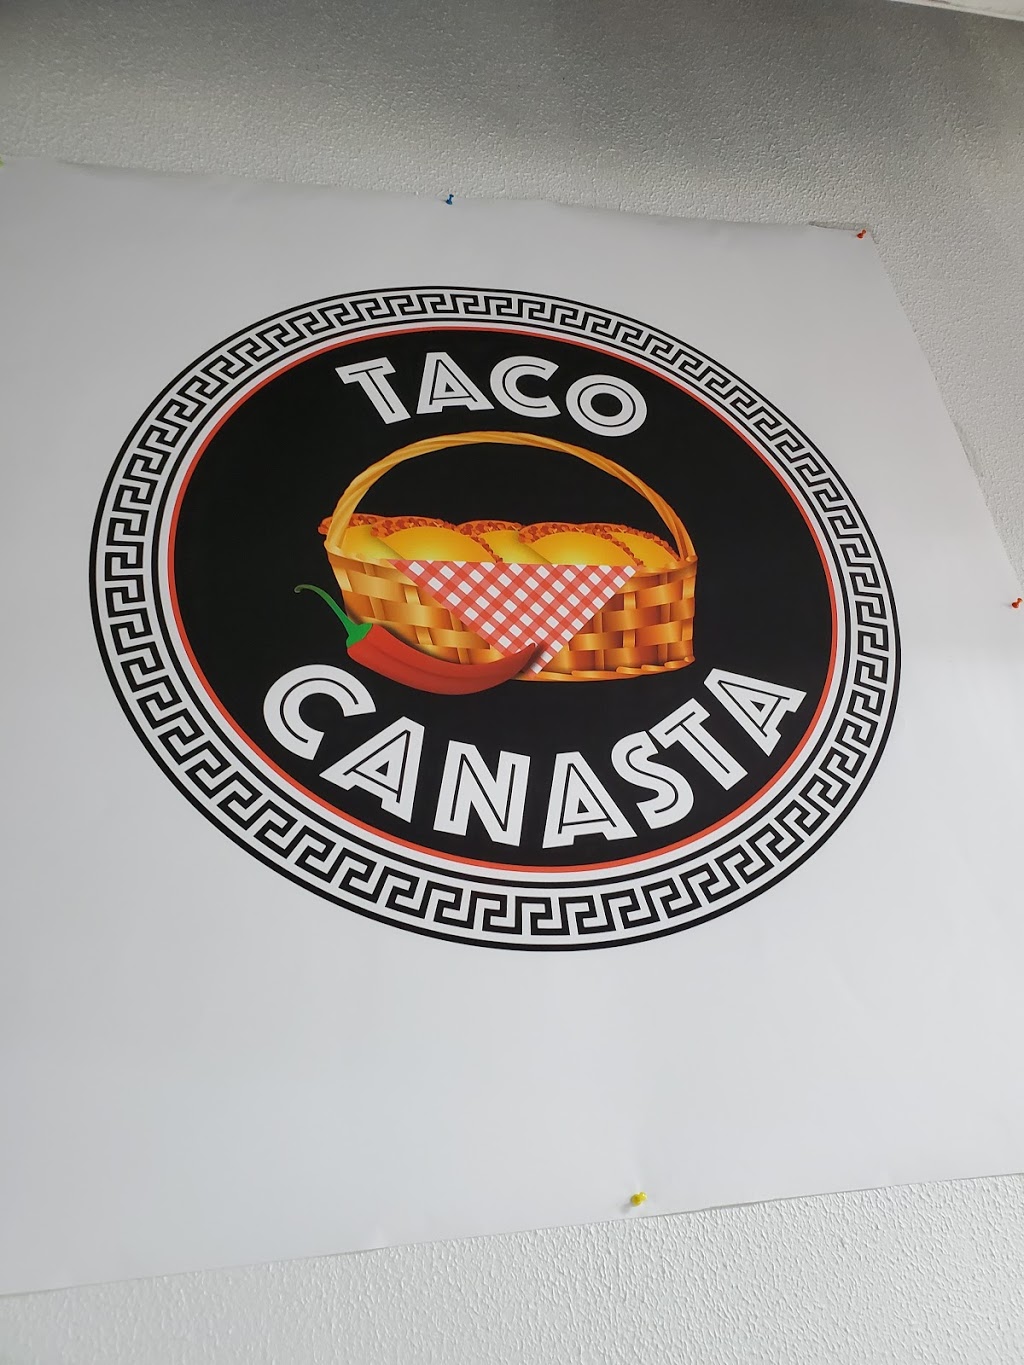 Taco Canasta | 2240 W Walnut Hill Ln, Irving, TX 75038 | Phone: (972) 821-0828